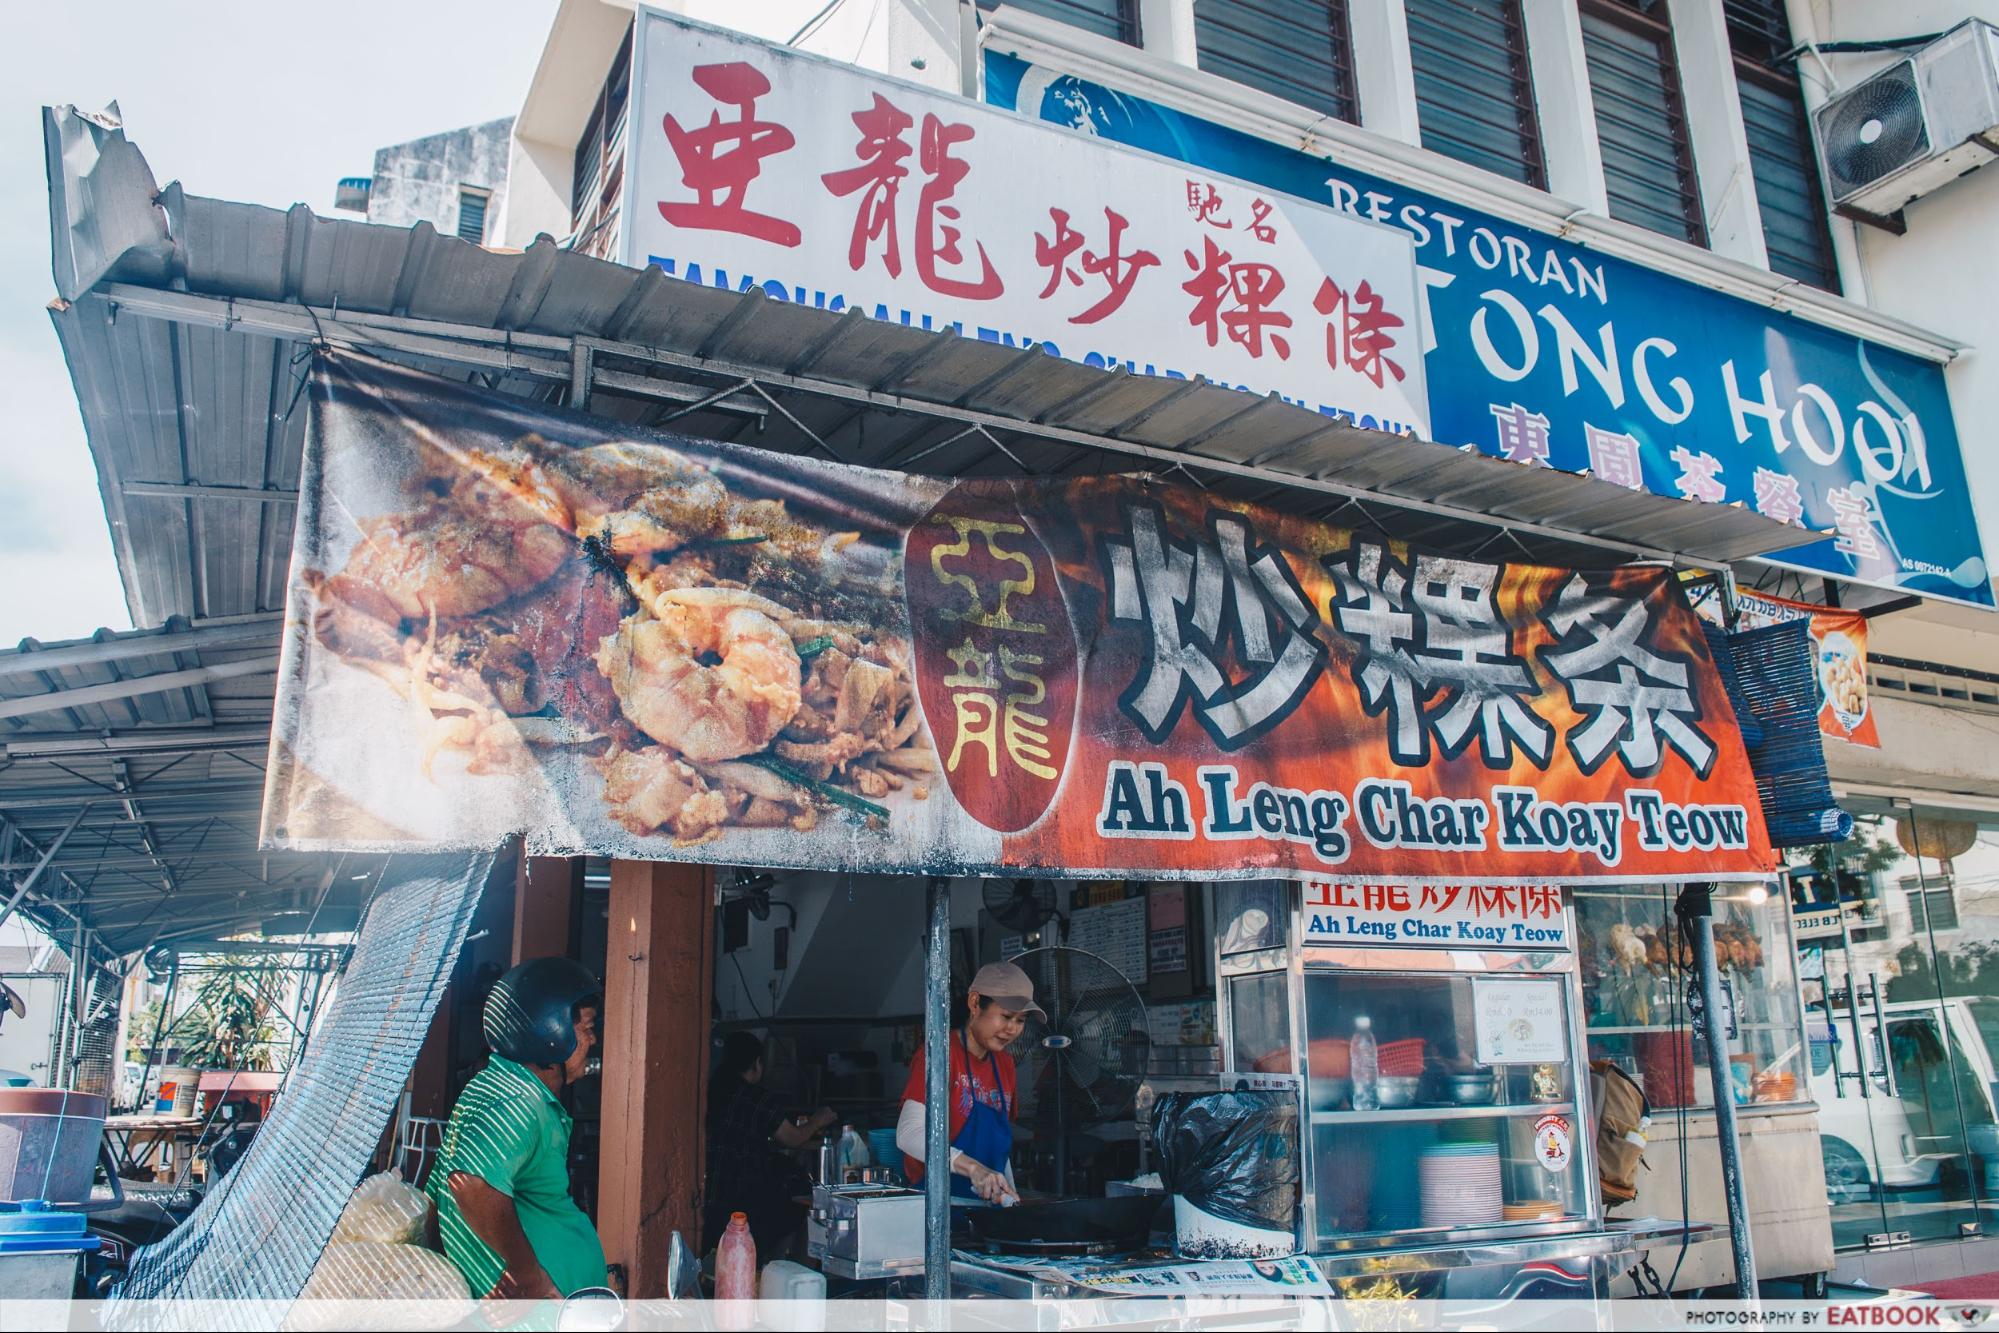 Penang Hawker Food - Ah Leng Char Koay Teow